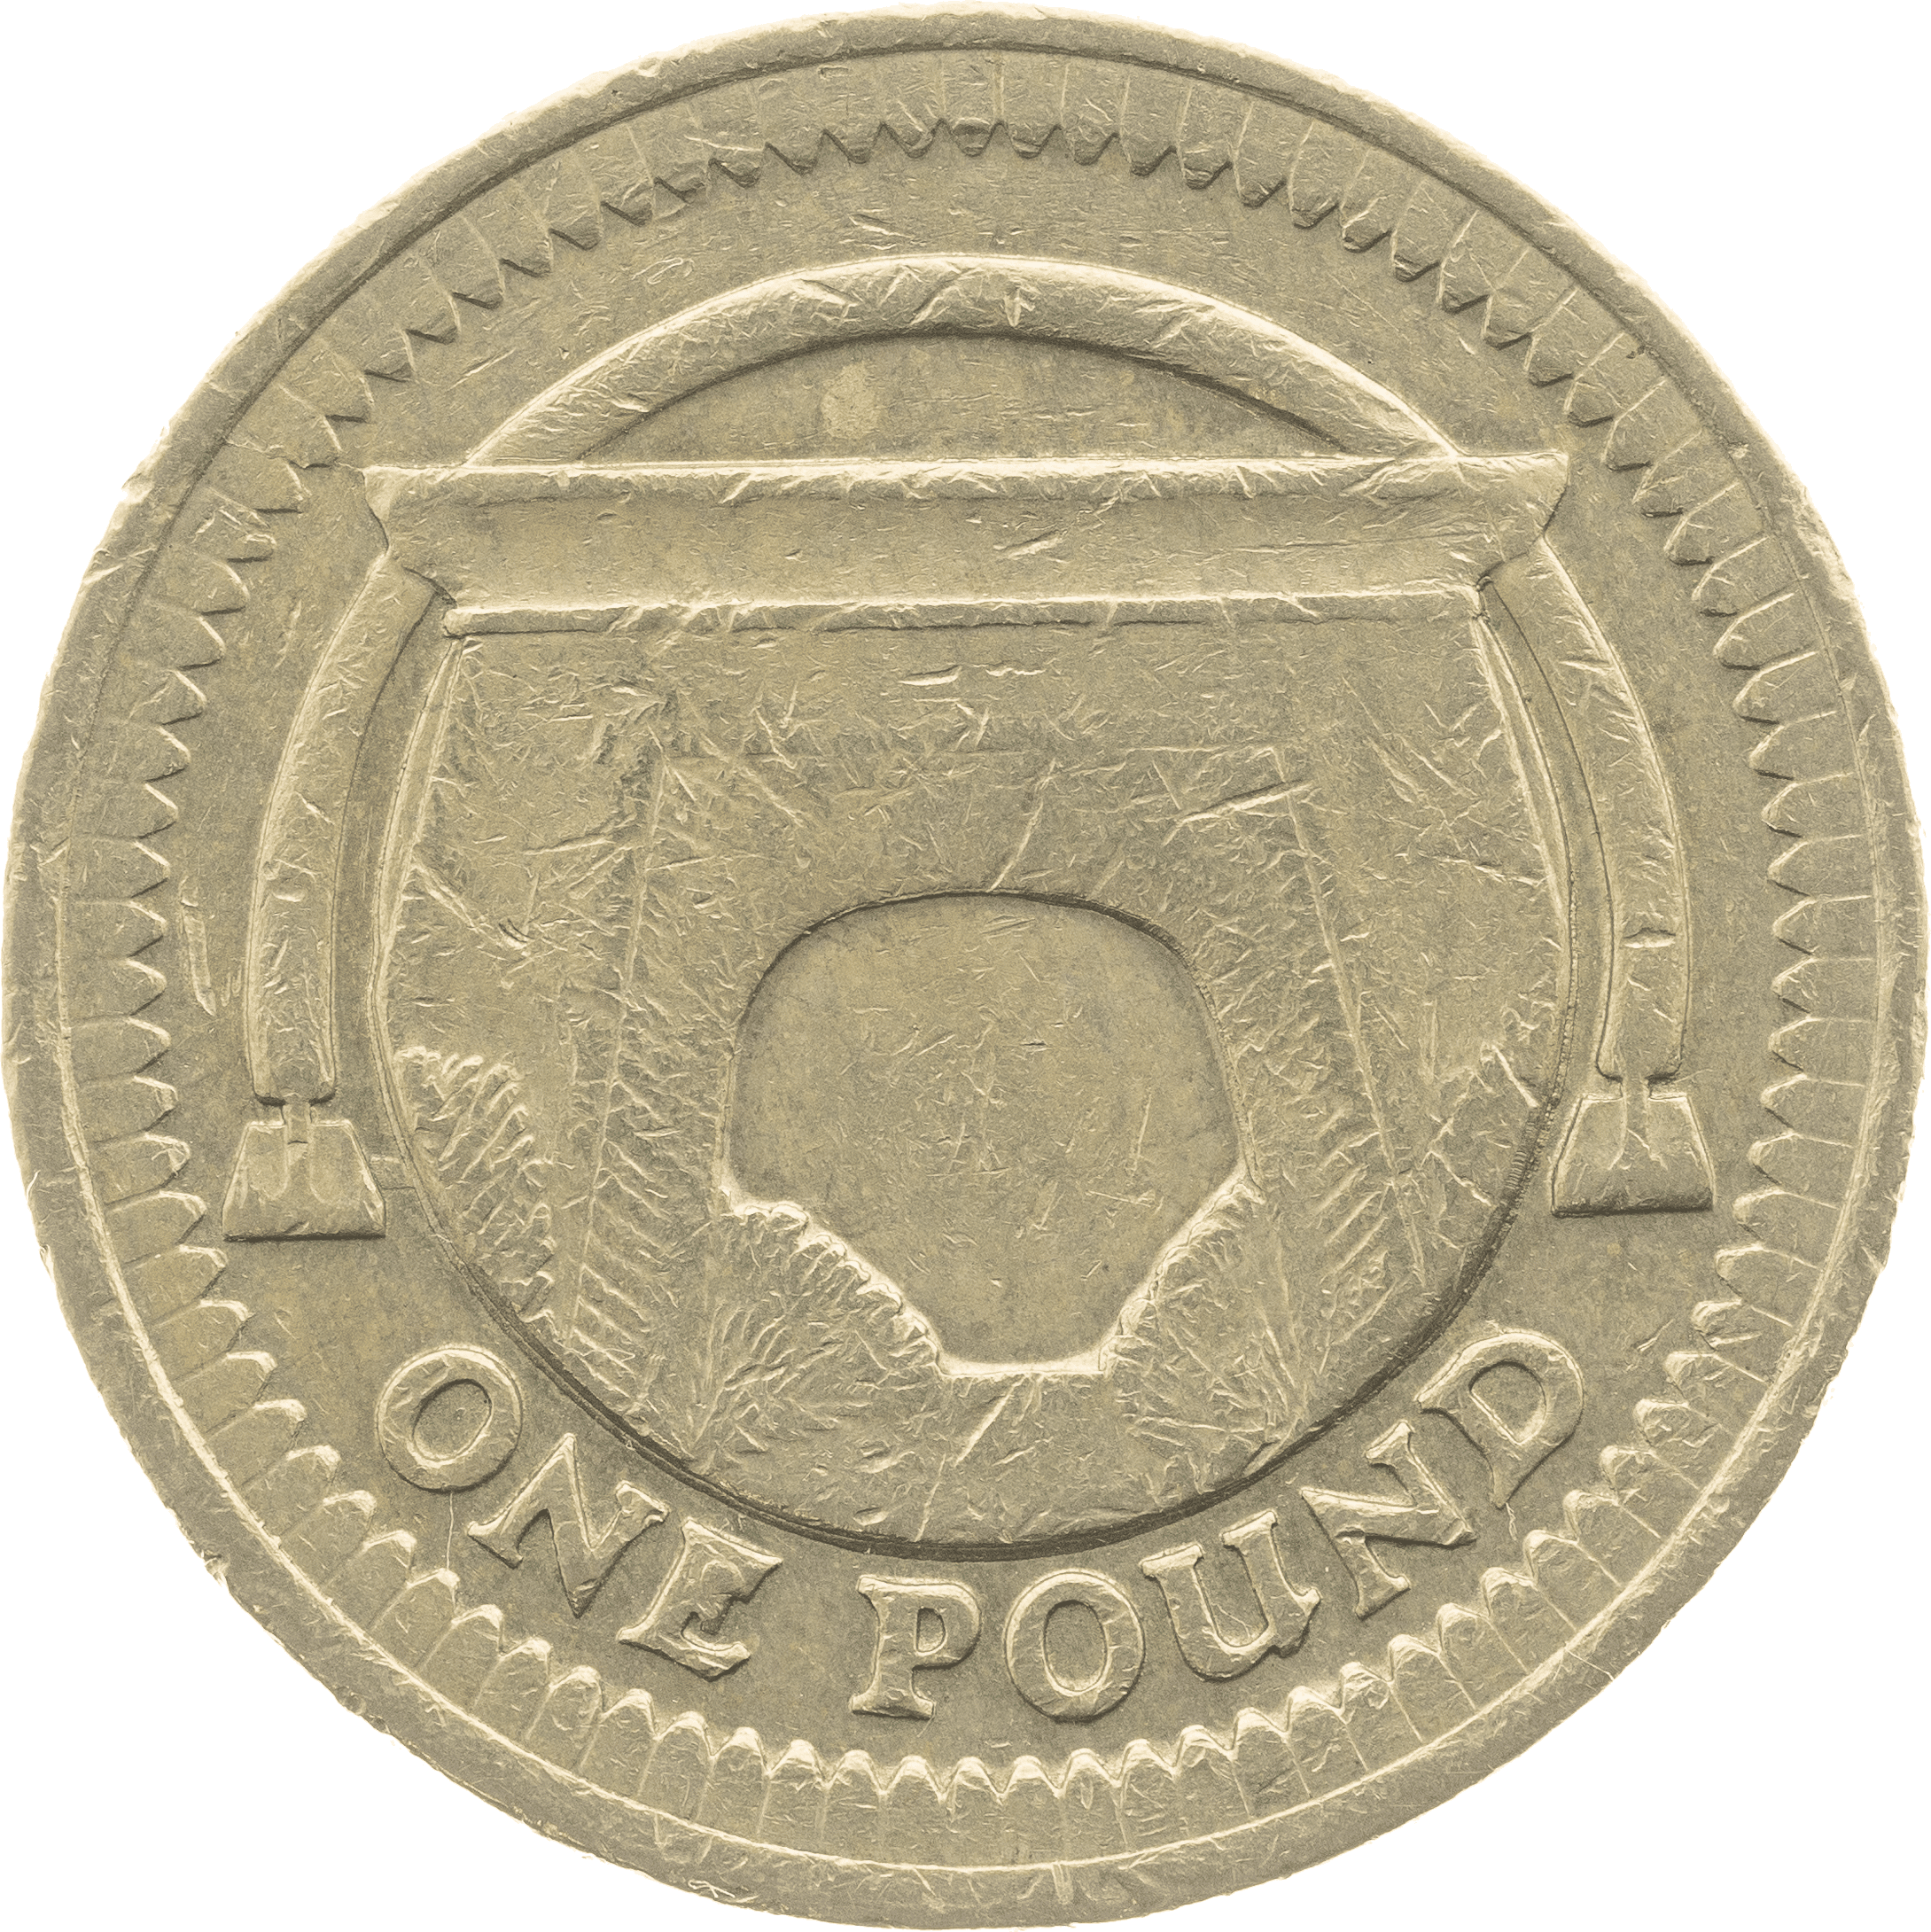 Egyptian Arch £1 Coin Design